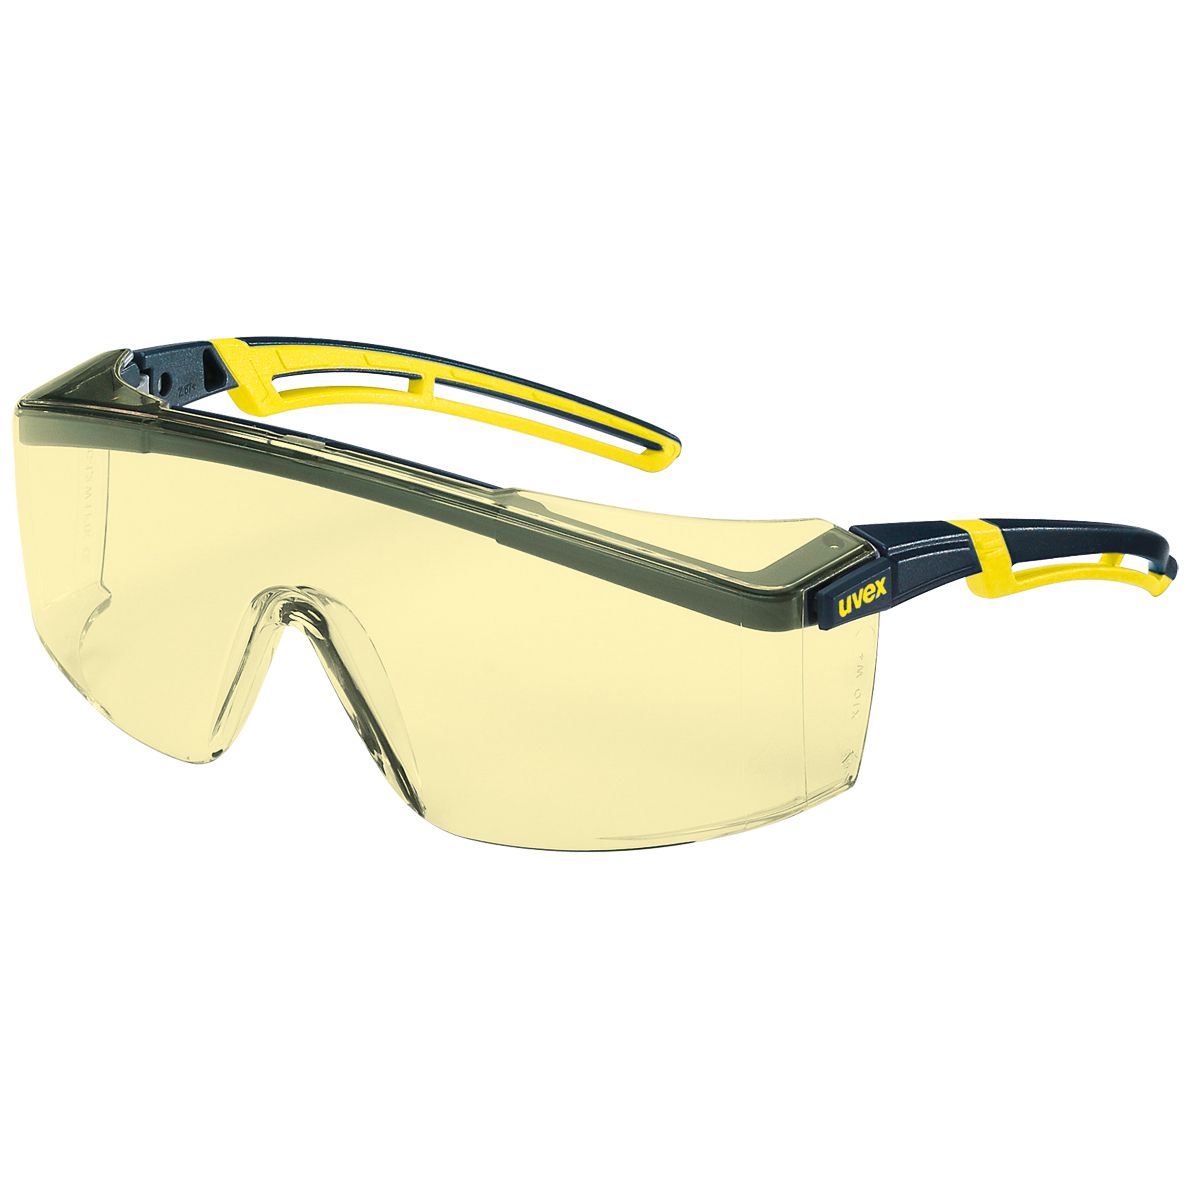 uvex astrospec 2.0 Schutzbrille - EN 166/170 - Überbrille für Brillenträger - Gelb-Schwarz/Amber